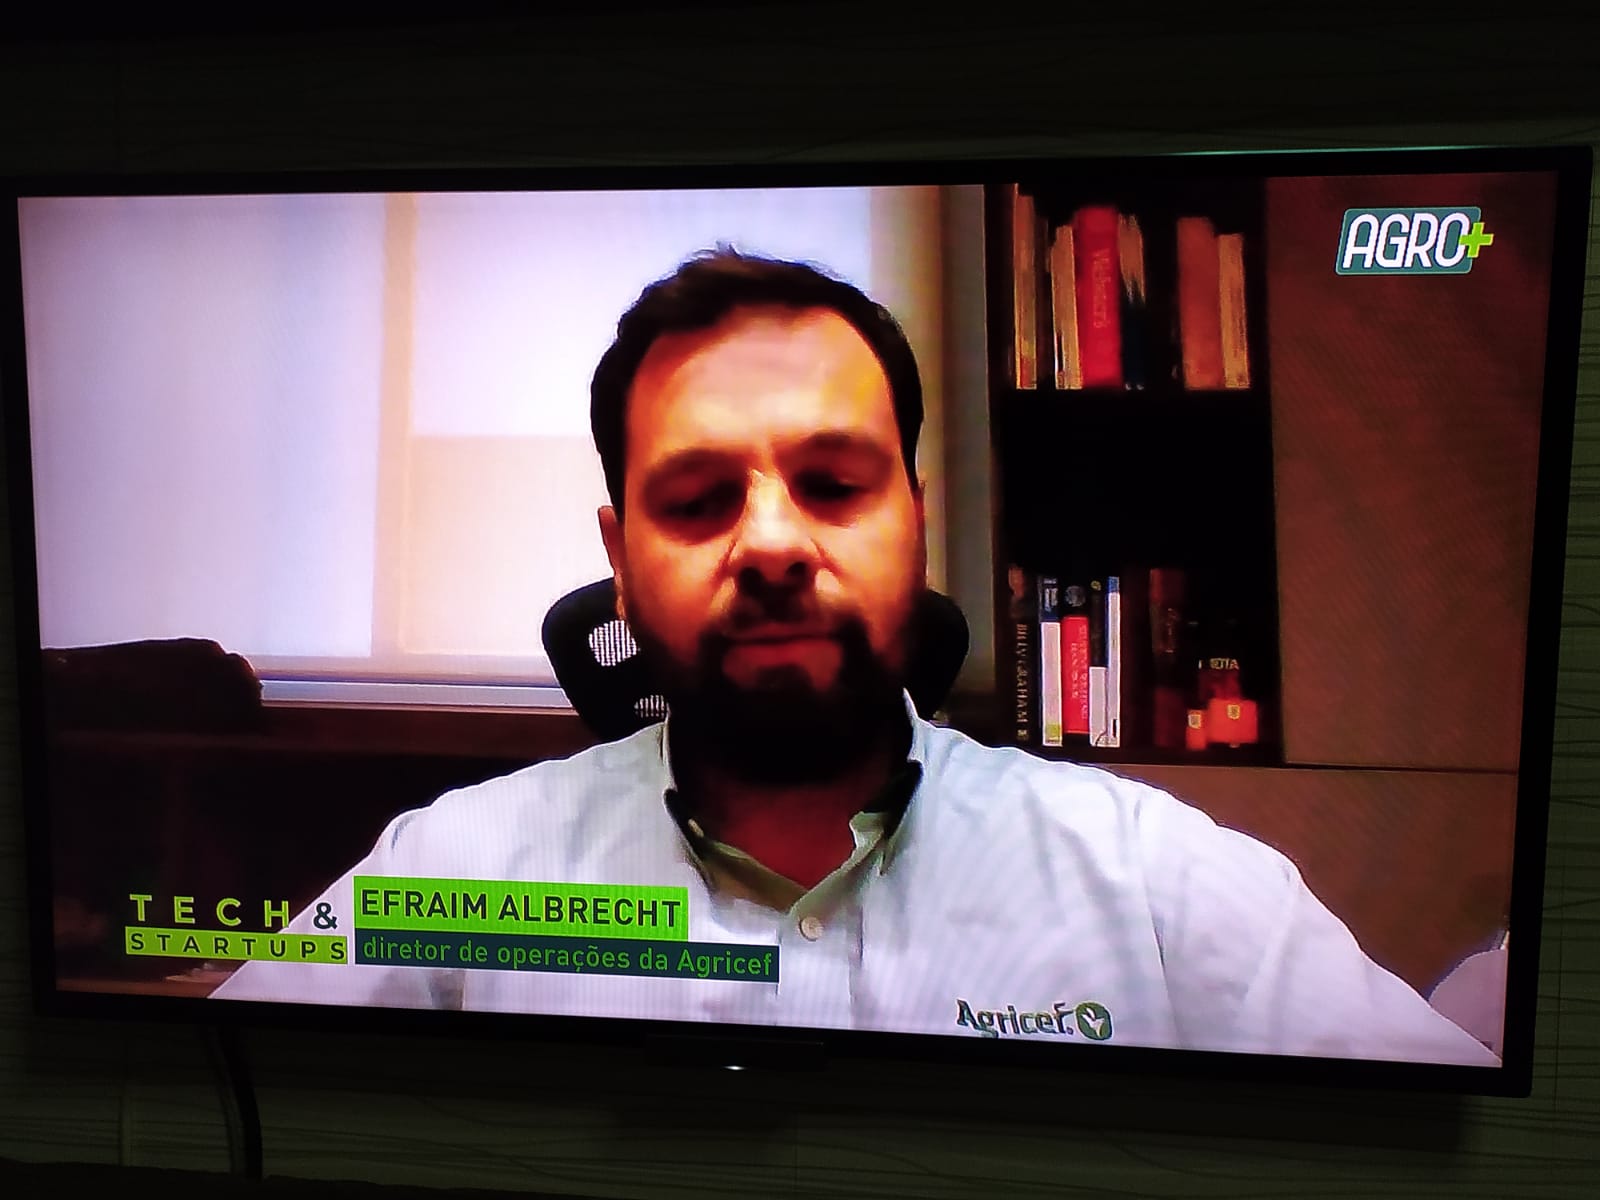 Na imagem está o diretor de operações da startup Agricef, Efraim Albrecht, em uma tela de televisão vestindo uma camisa polo na cor branca.